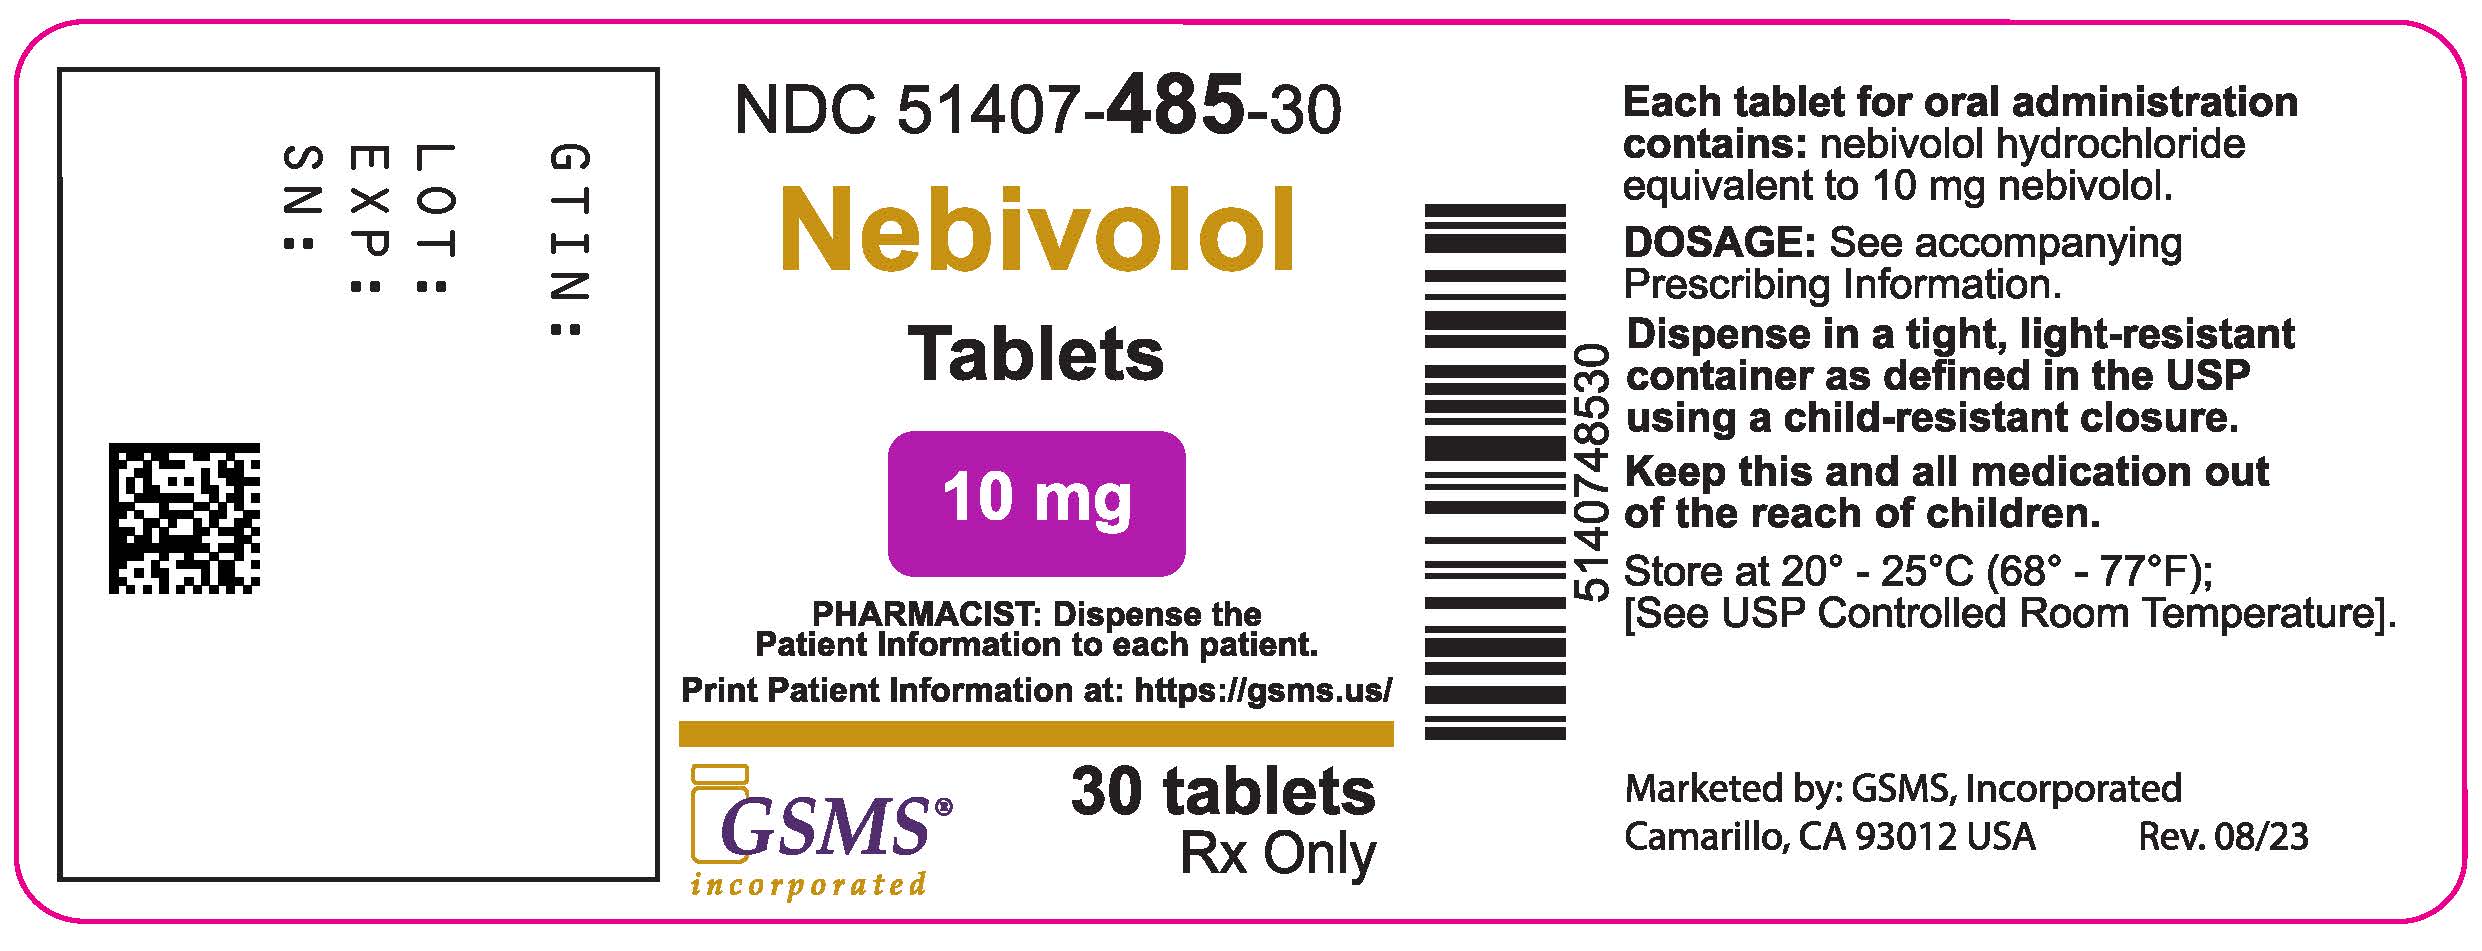 51407-485-30LB - Nevibolol Tablet - Rev. 0823.jpg